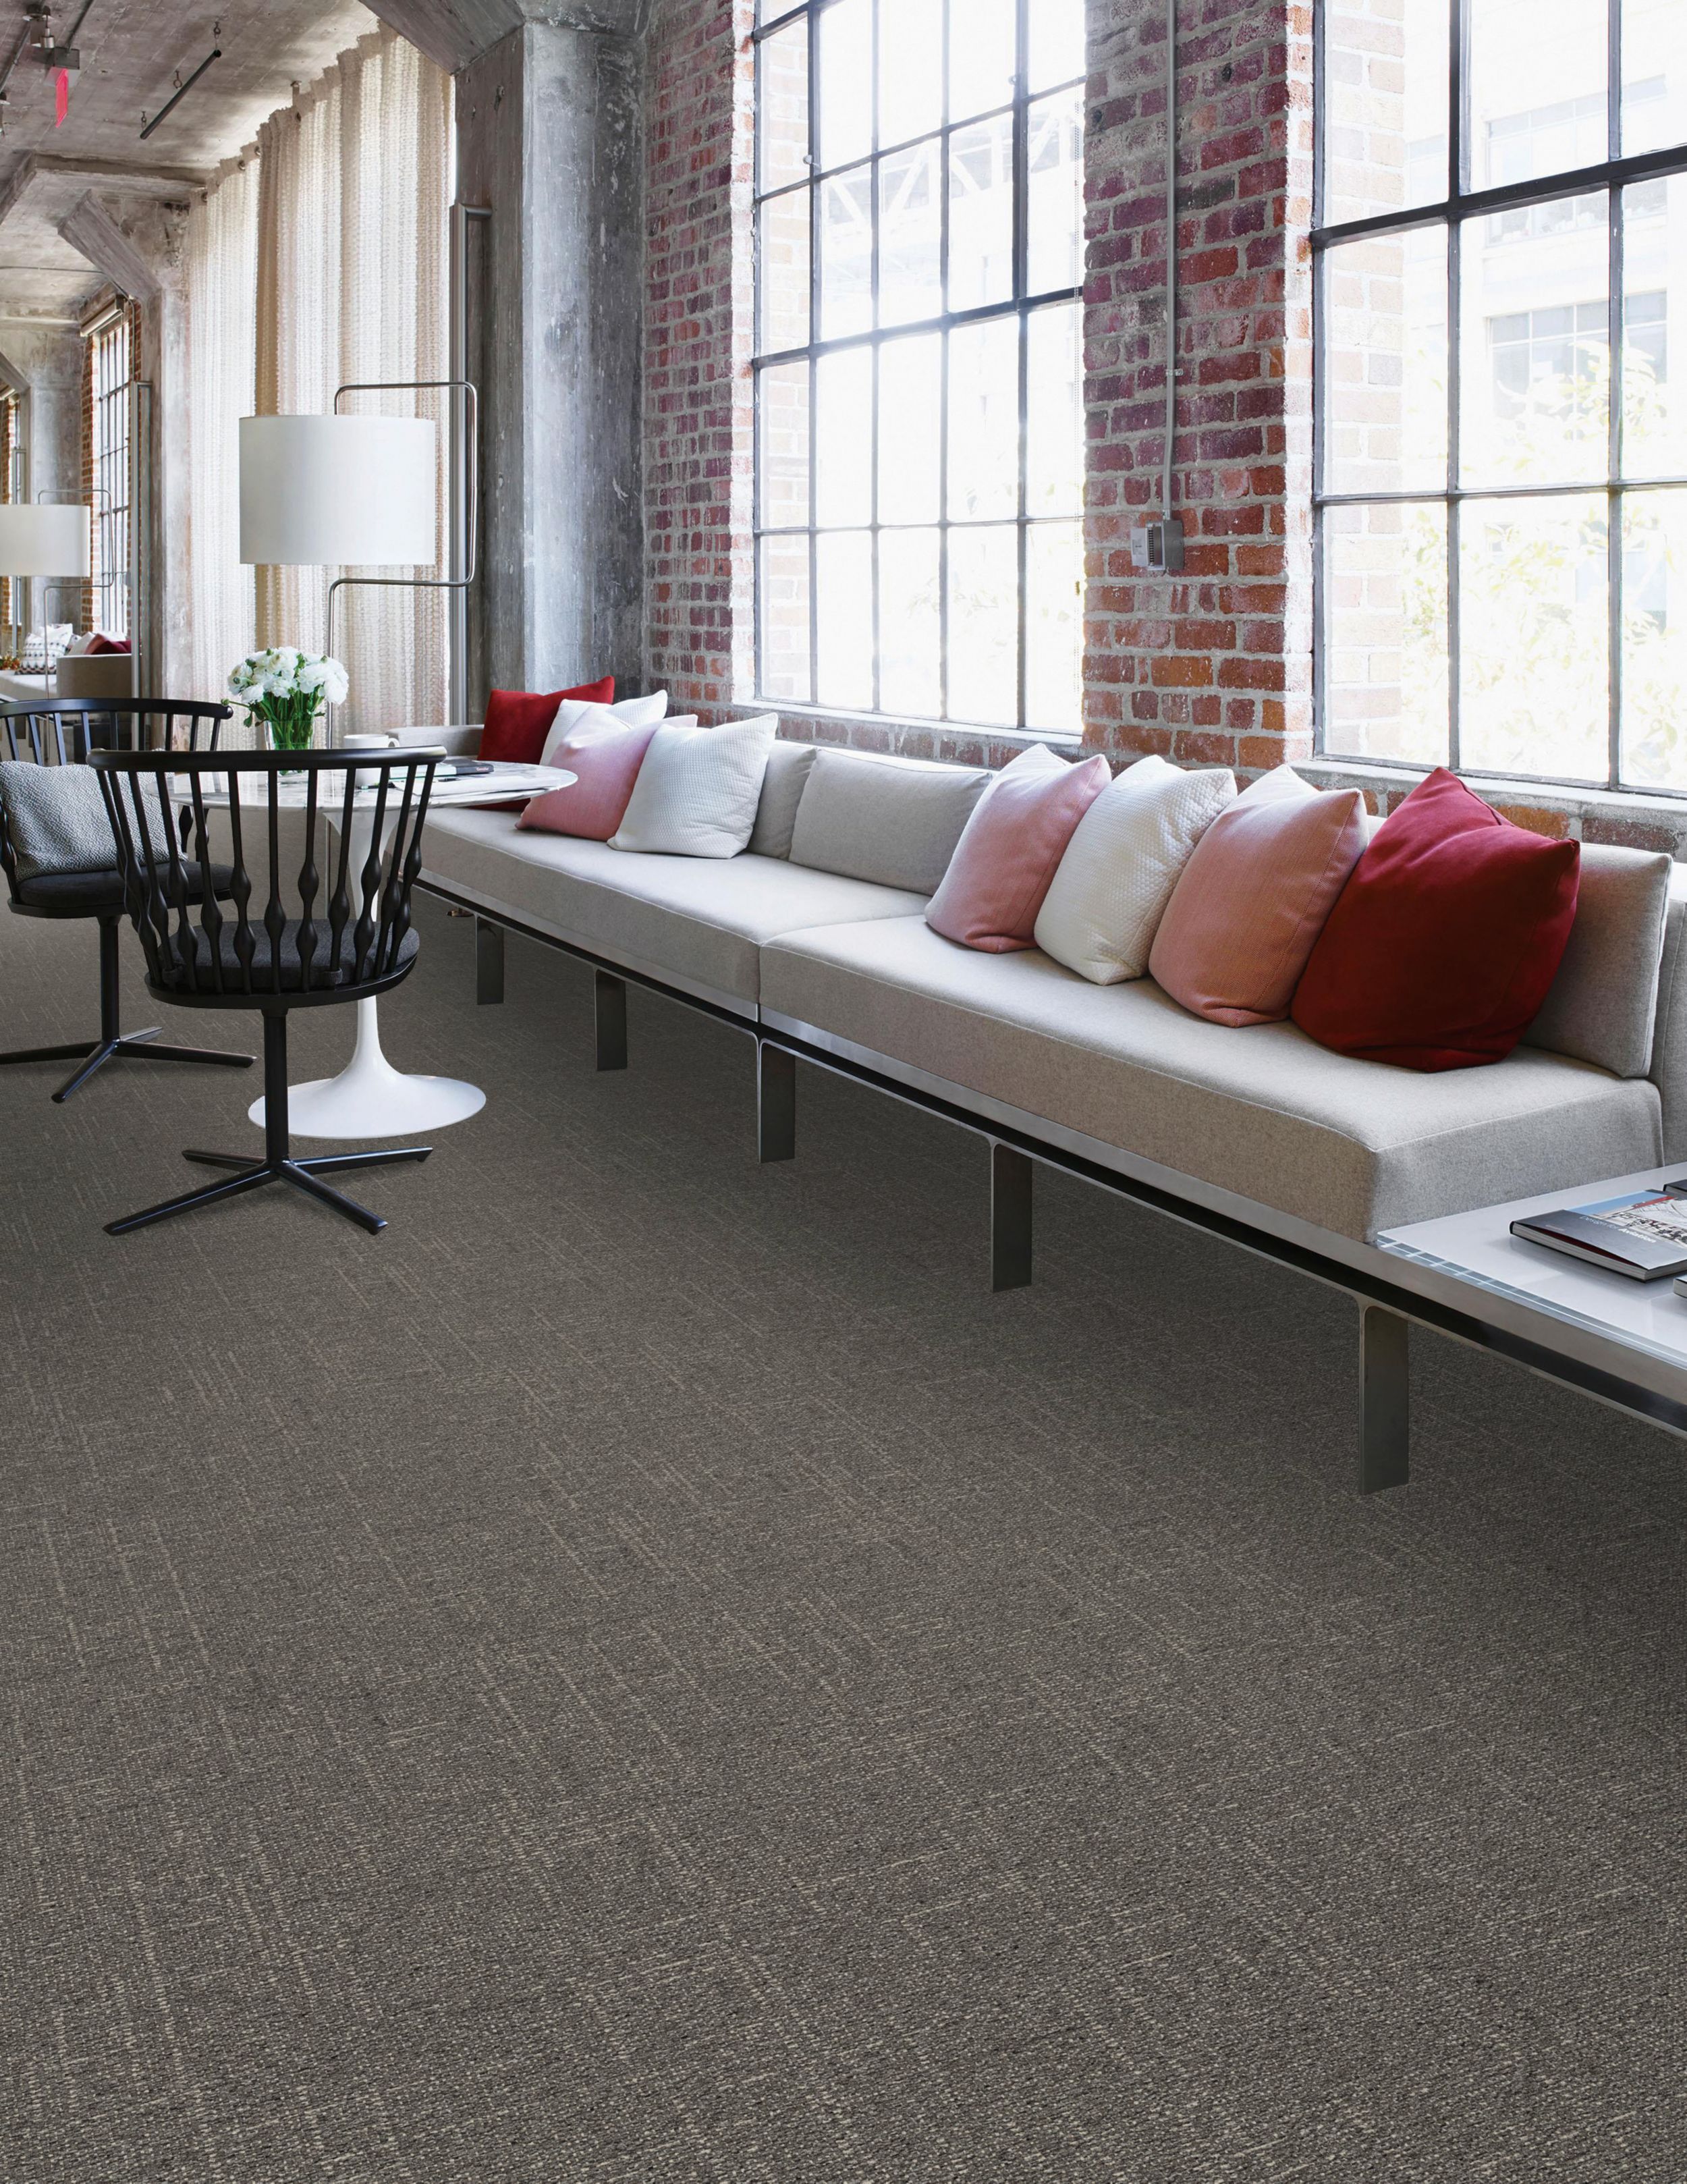 Interface DL901 carpet tile in public space with long couch numéro d’image 1